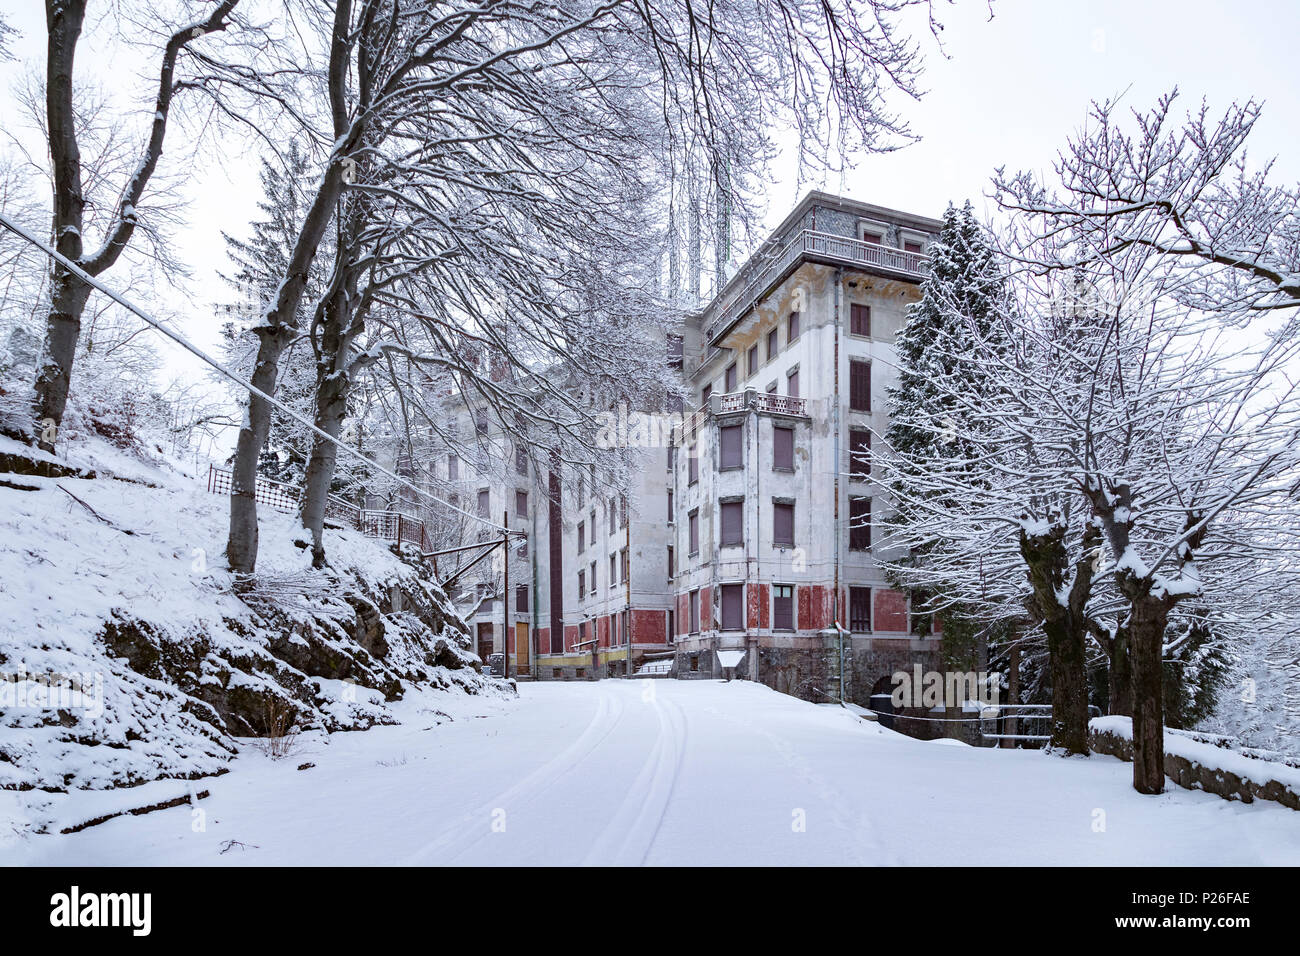 Vista de la abandonada Grand Hotel de Campo dei Fiori durante una nieve invernal. Campo dei Fiori, Varese, Parco de Campo dei Fiori, Lombardía, Italia. Foto de stock